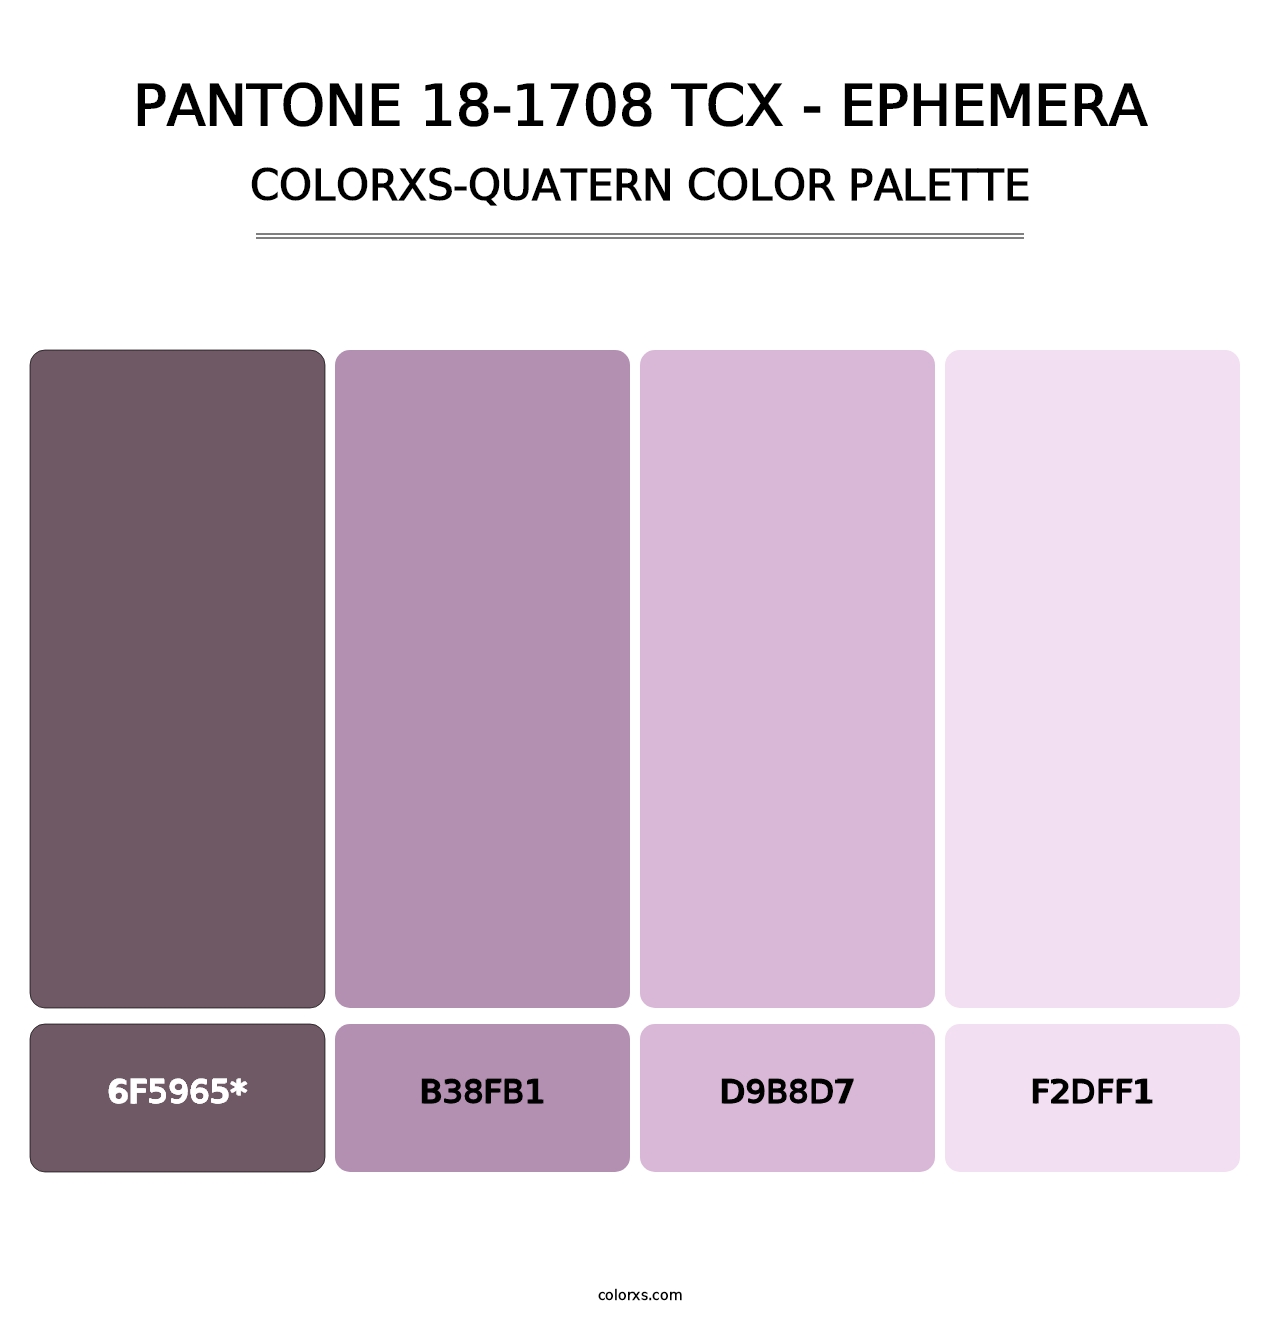 PANTONE 18-1708 TCX - Ephemera - Colorxs Quatern Palette